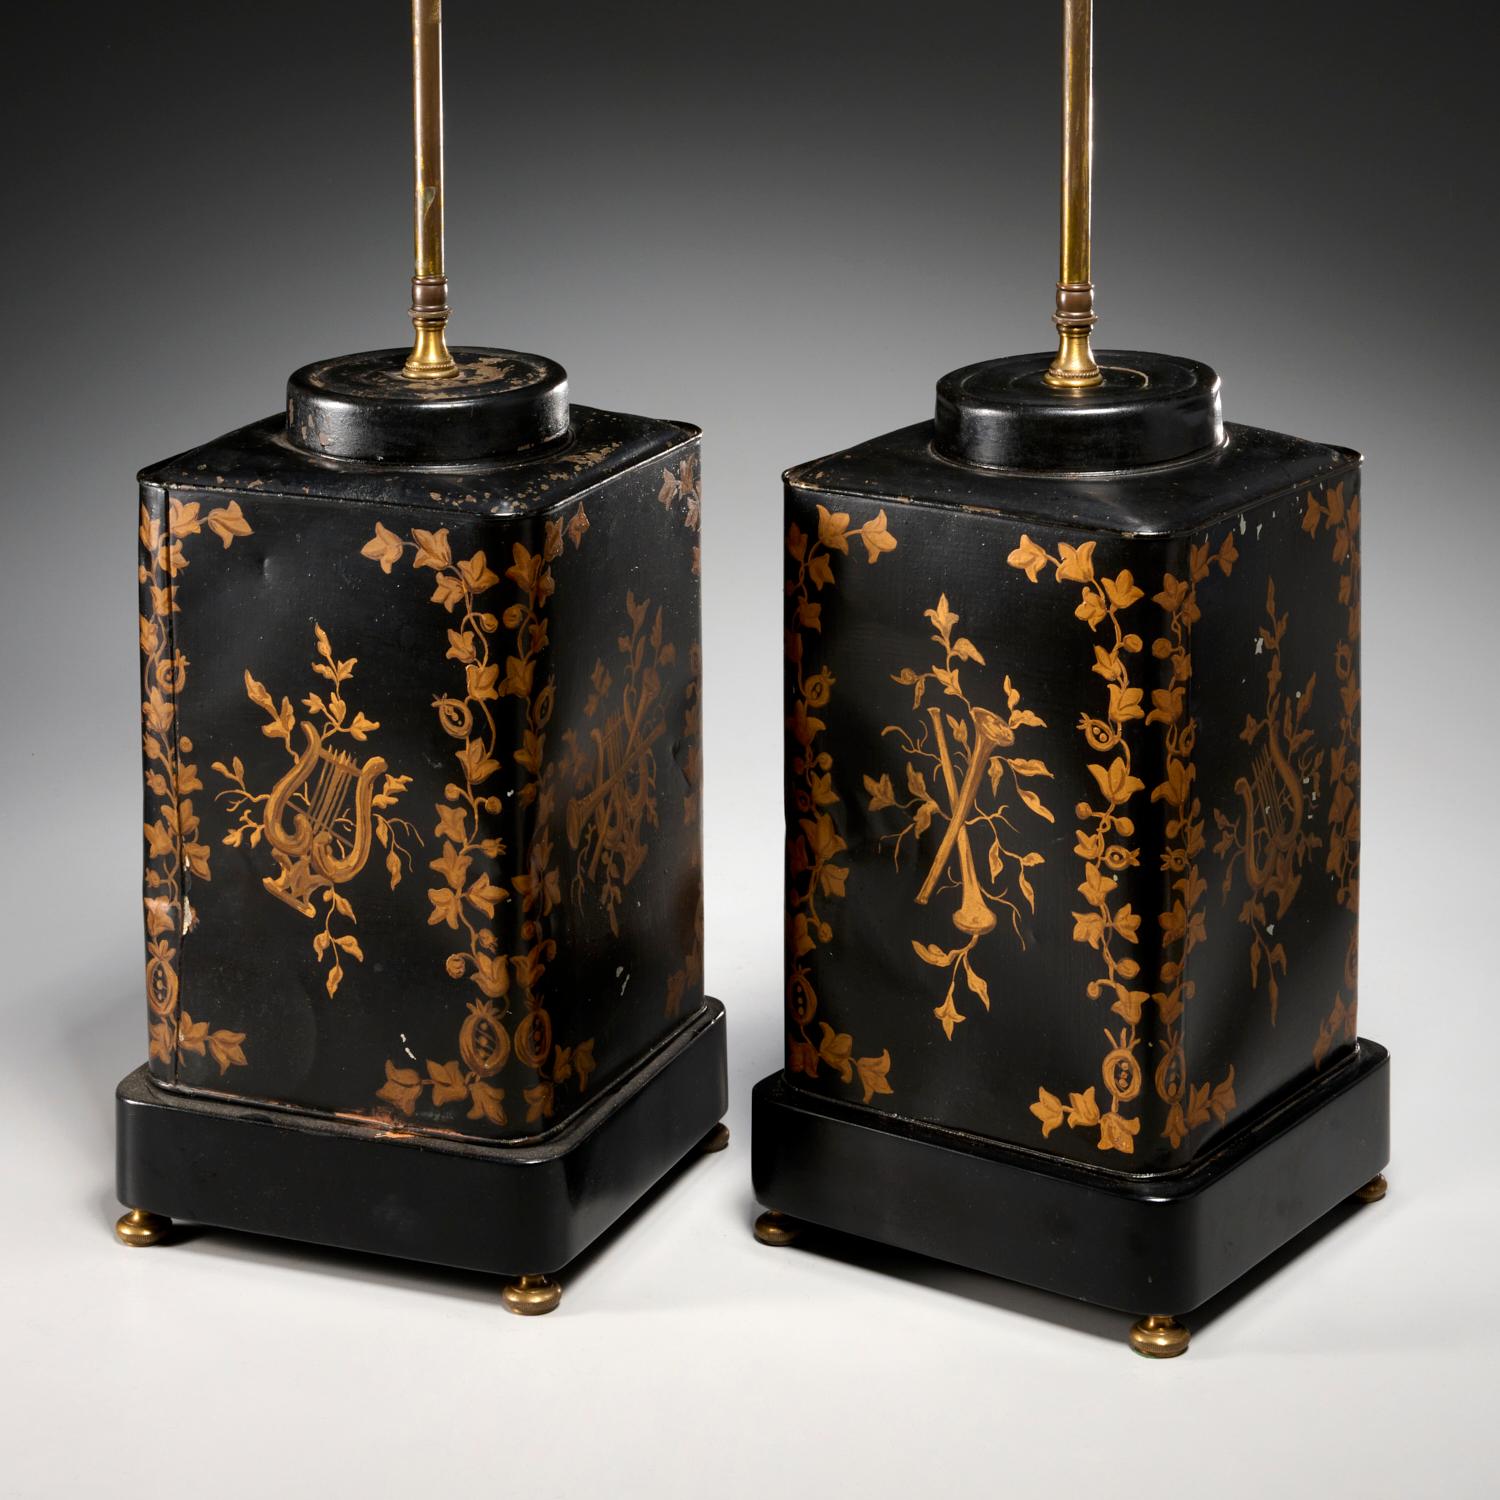 Ein Paar Teekanister aus dem späten 19. Jh., die zu Tischlampen umfunktioniert wurden, jeweils mit 3 Glühbirnenfassungen. Mit Gold bemaltes, schwarz emailliertes Metall, jeder rechteckige Kanister ist mit Hörnern und Leiern verziert, die von einem